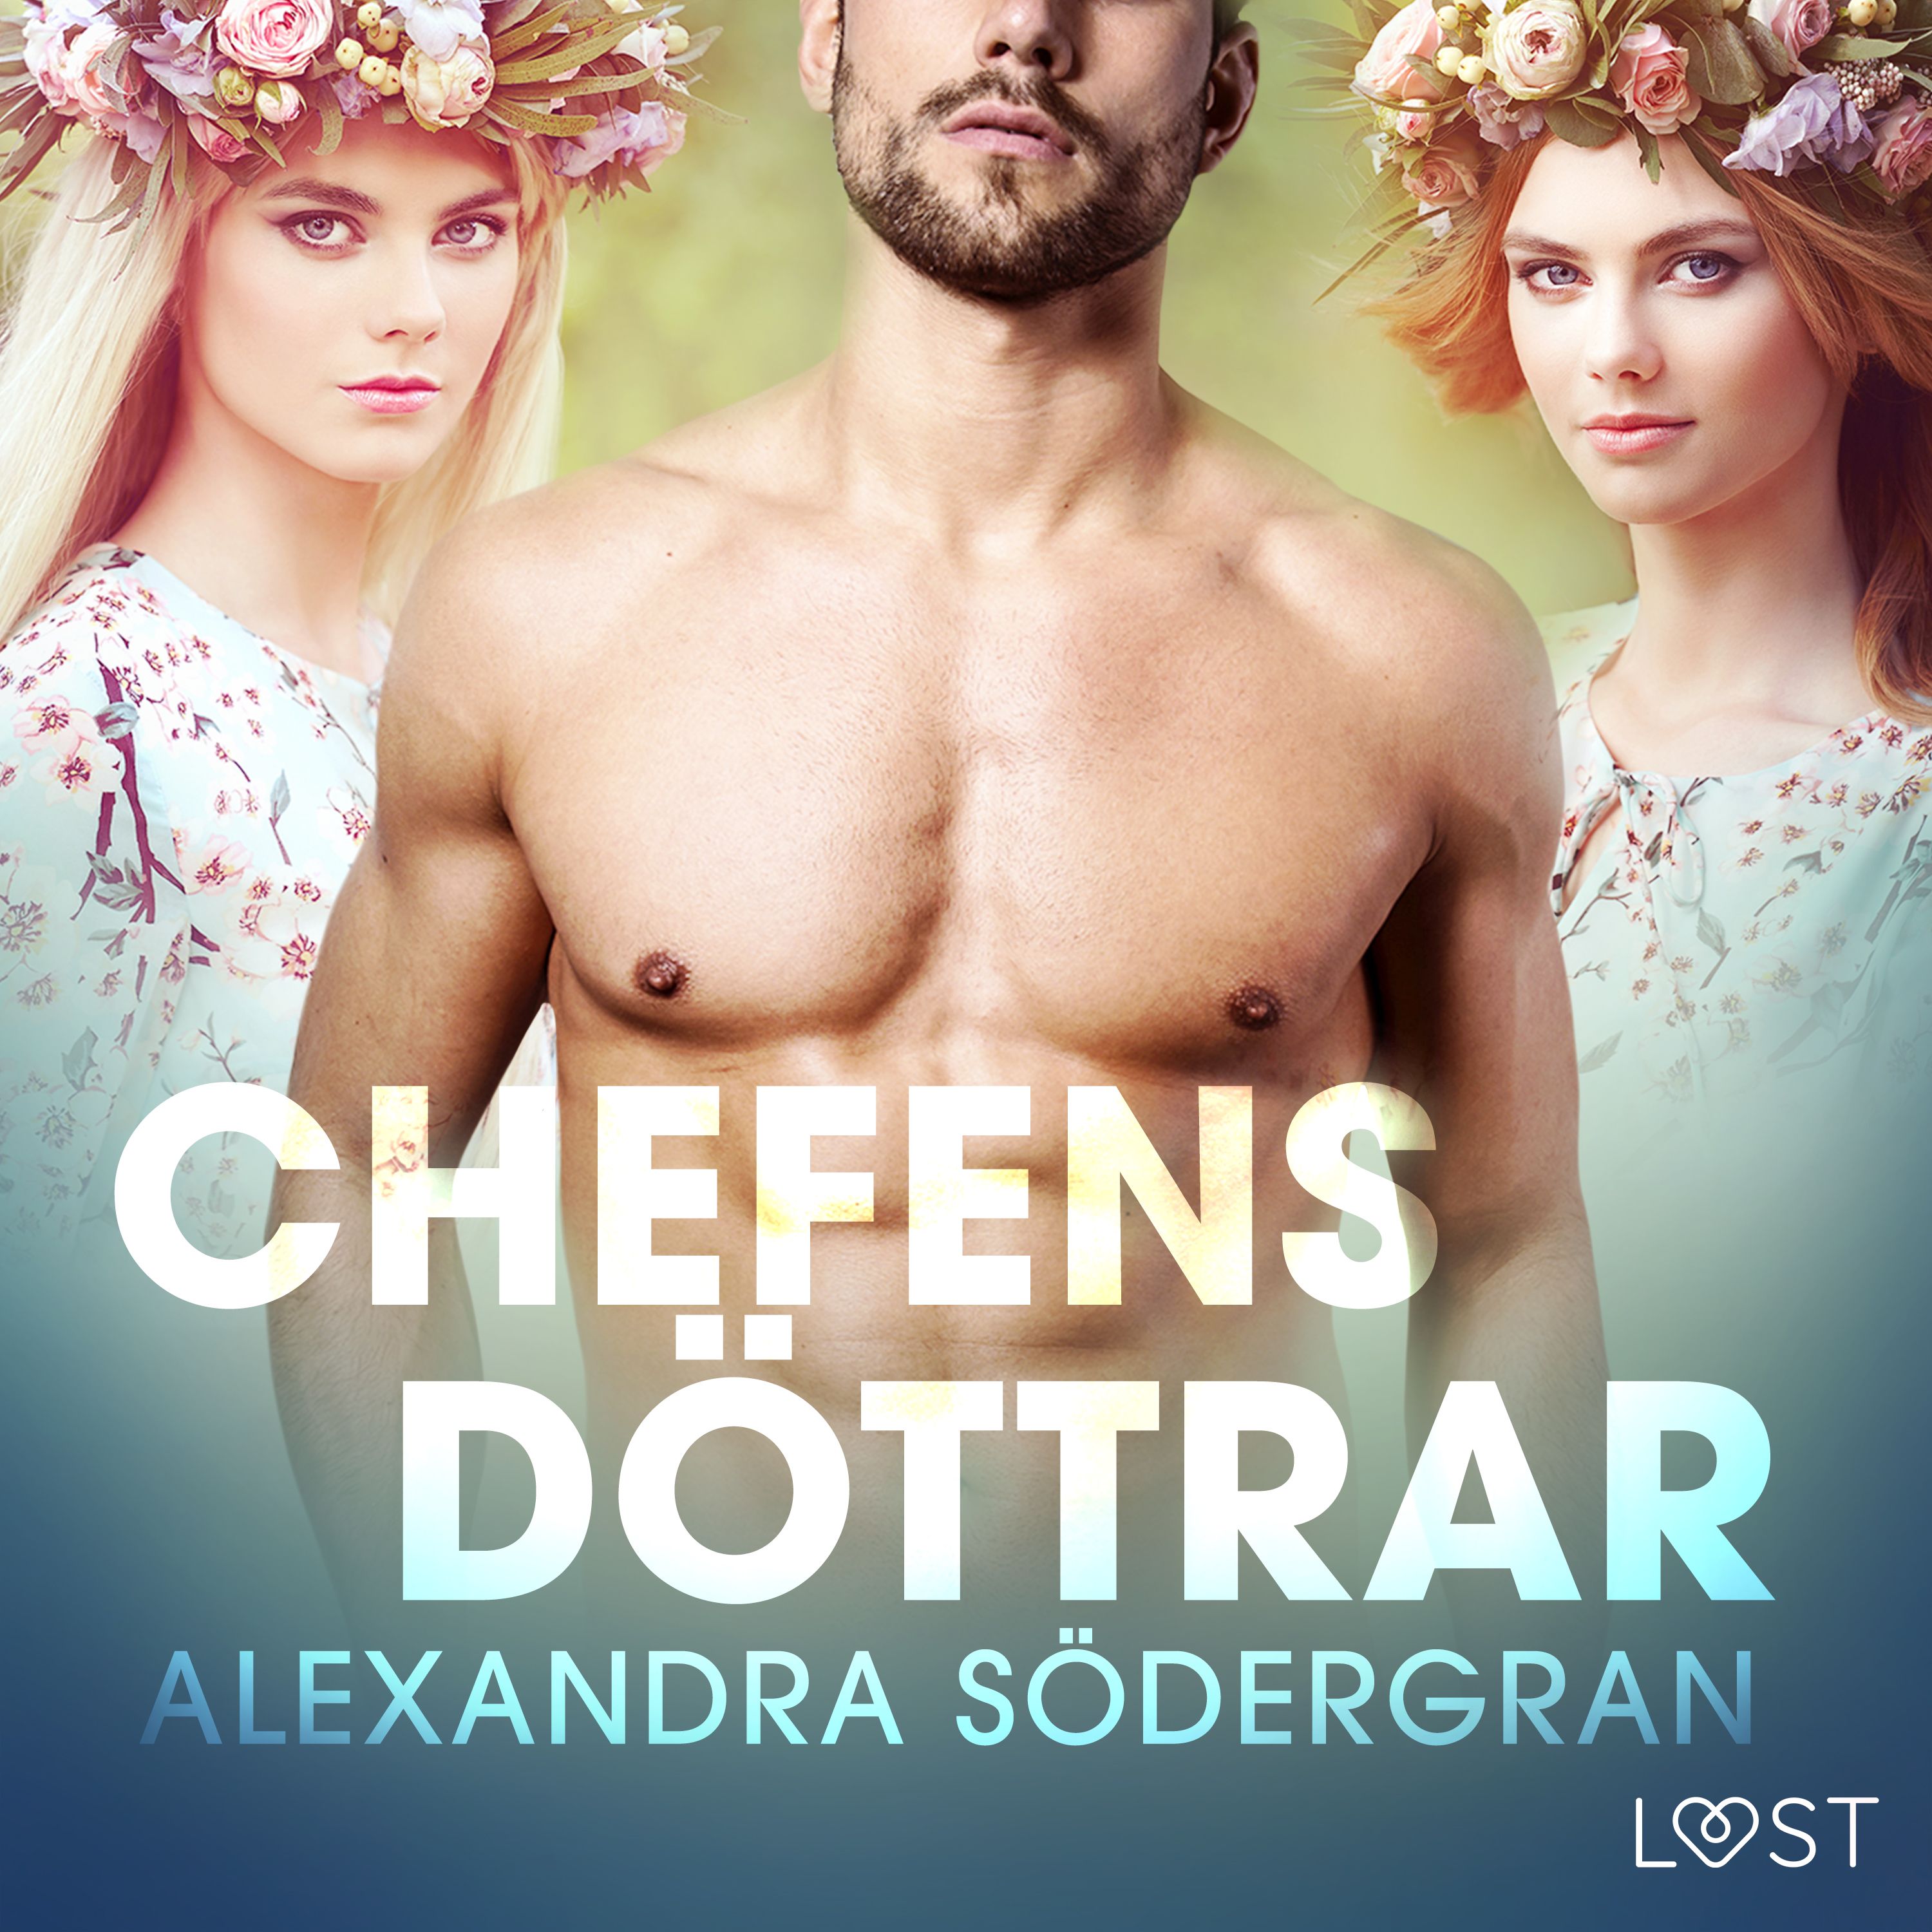 Chefens döttrar - erotisk midsommar novell, audiobook by Alexandra Södergran